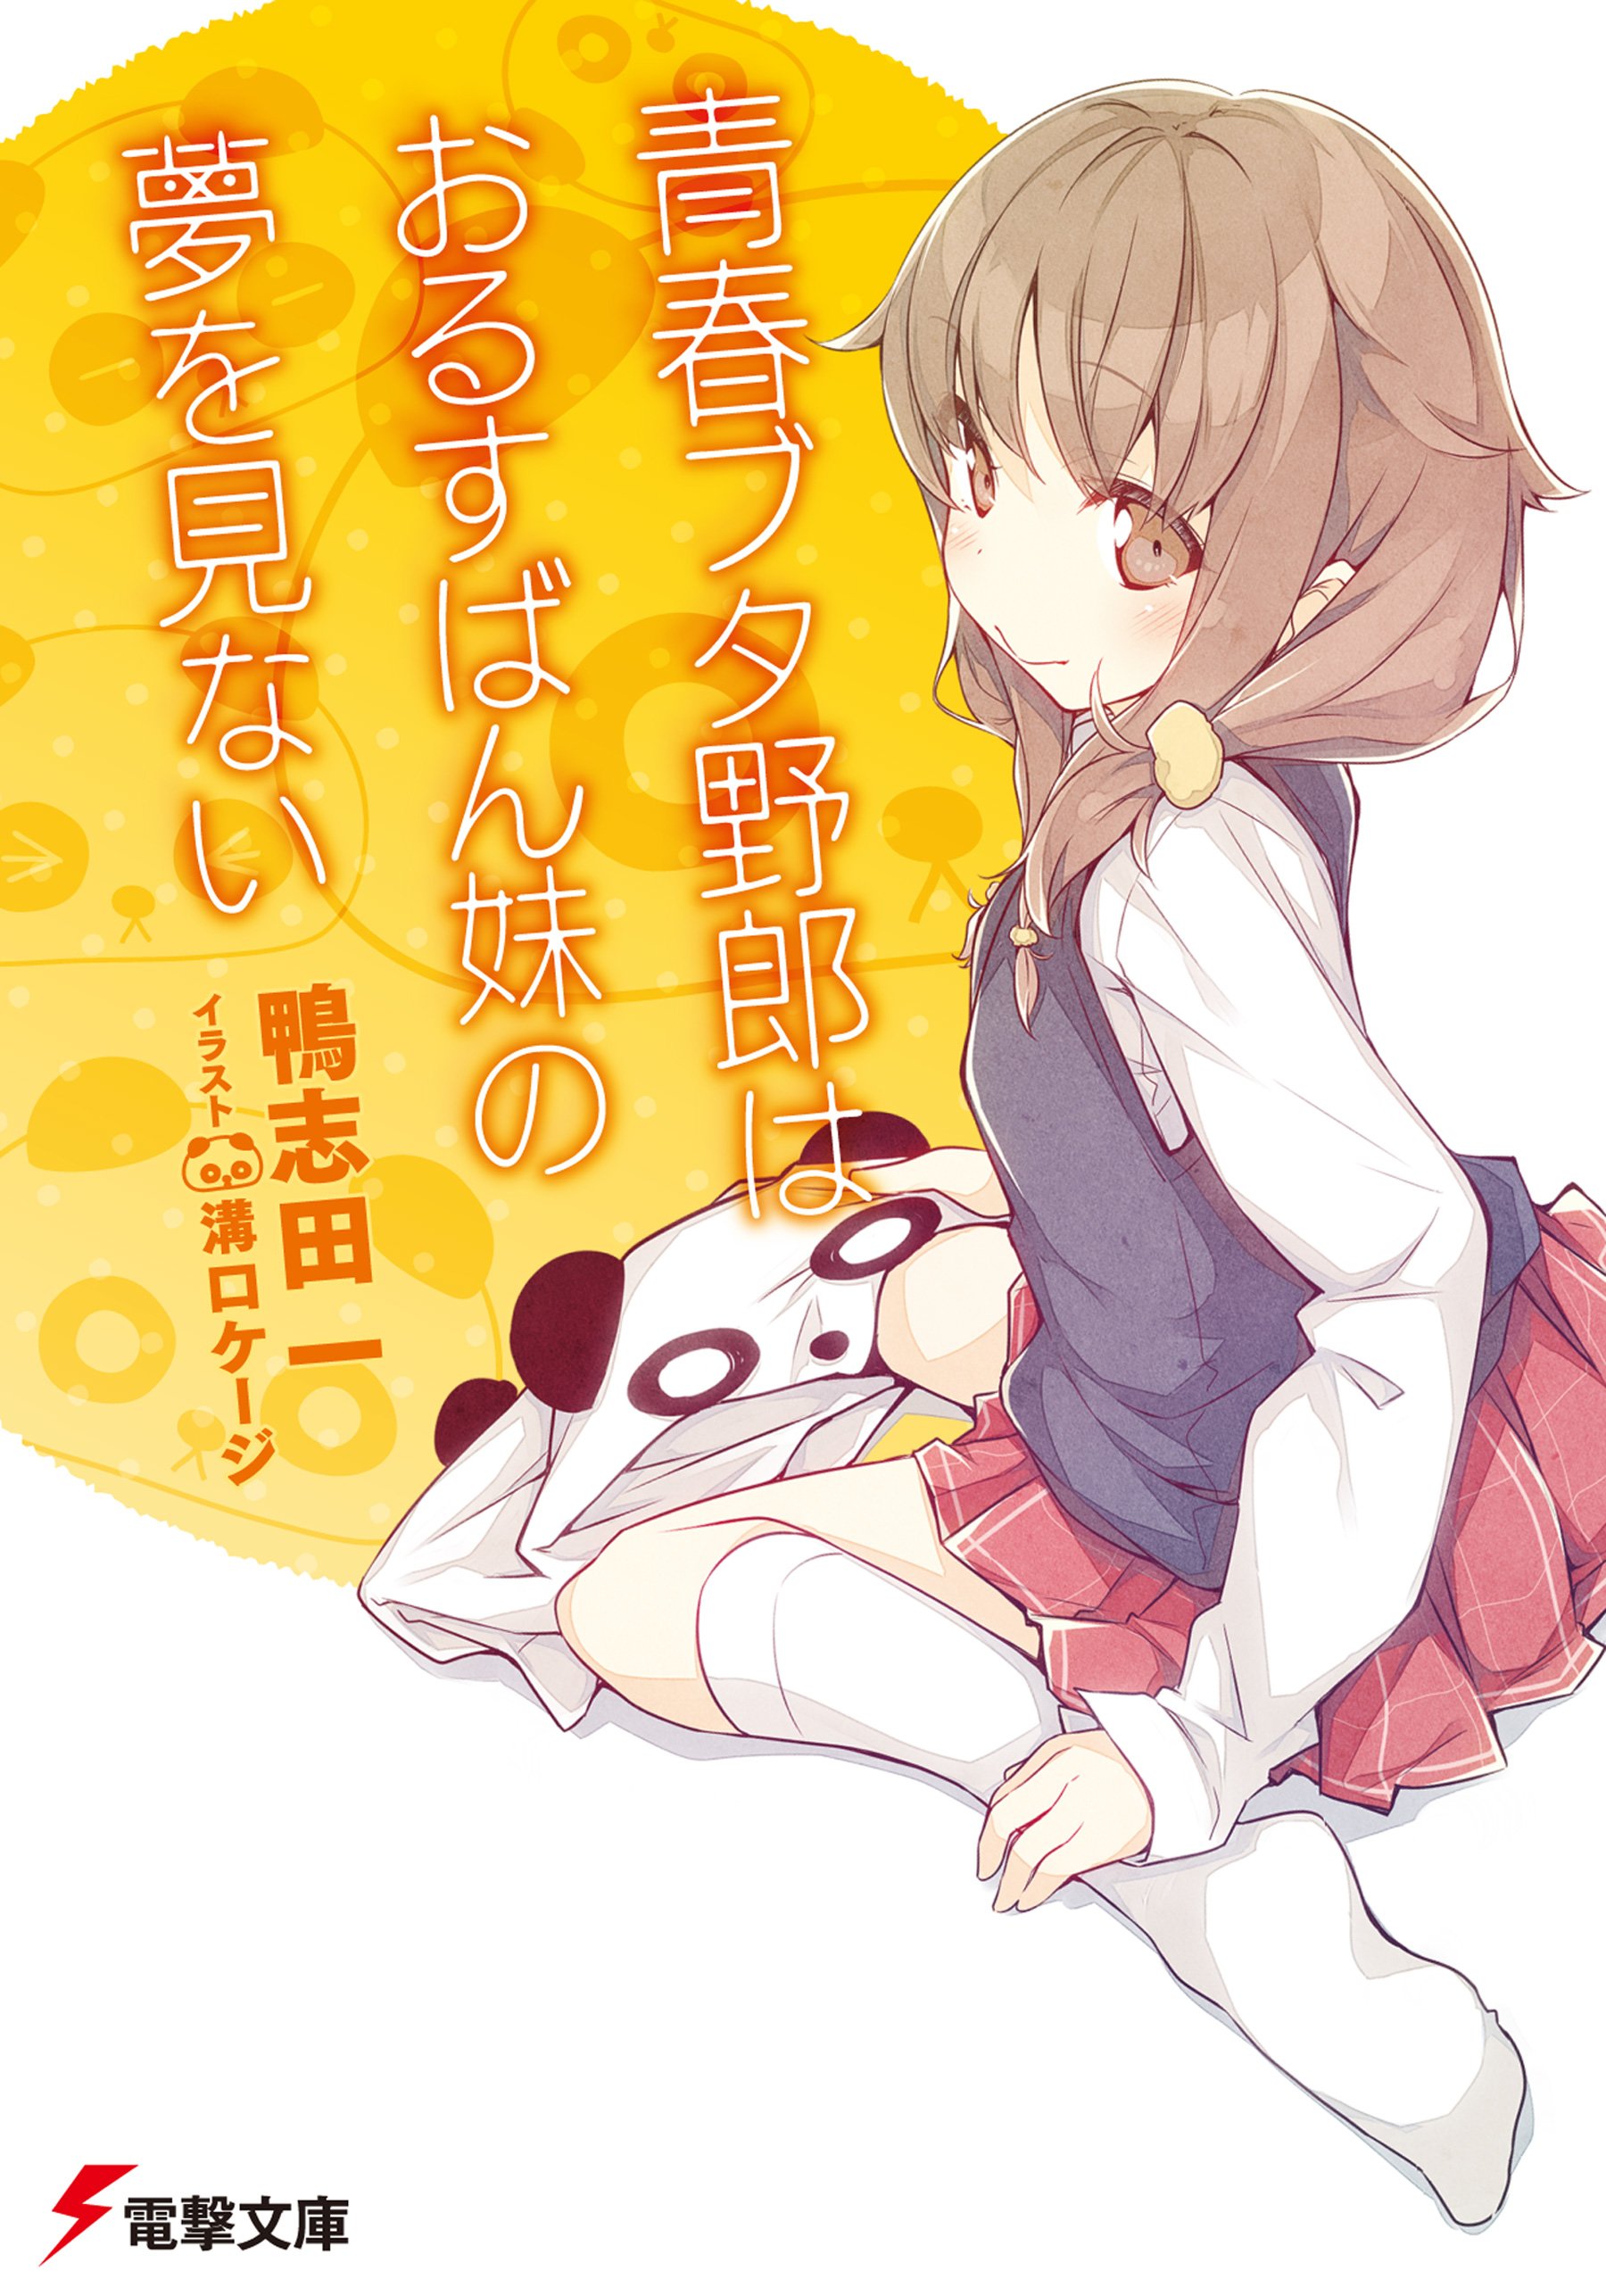 Donde leer la Novela Ligera y el Manga de Seishun Buta Yarou wa Bunny Girl  Senpai no Yume wo Minai 